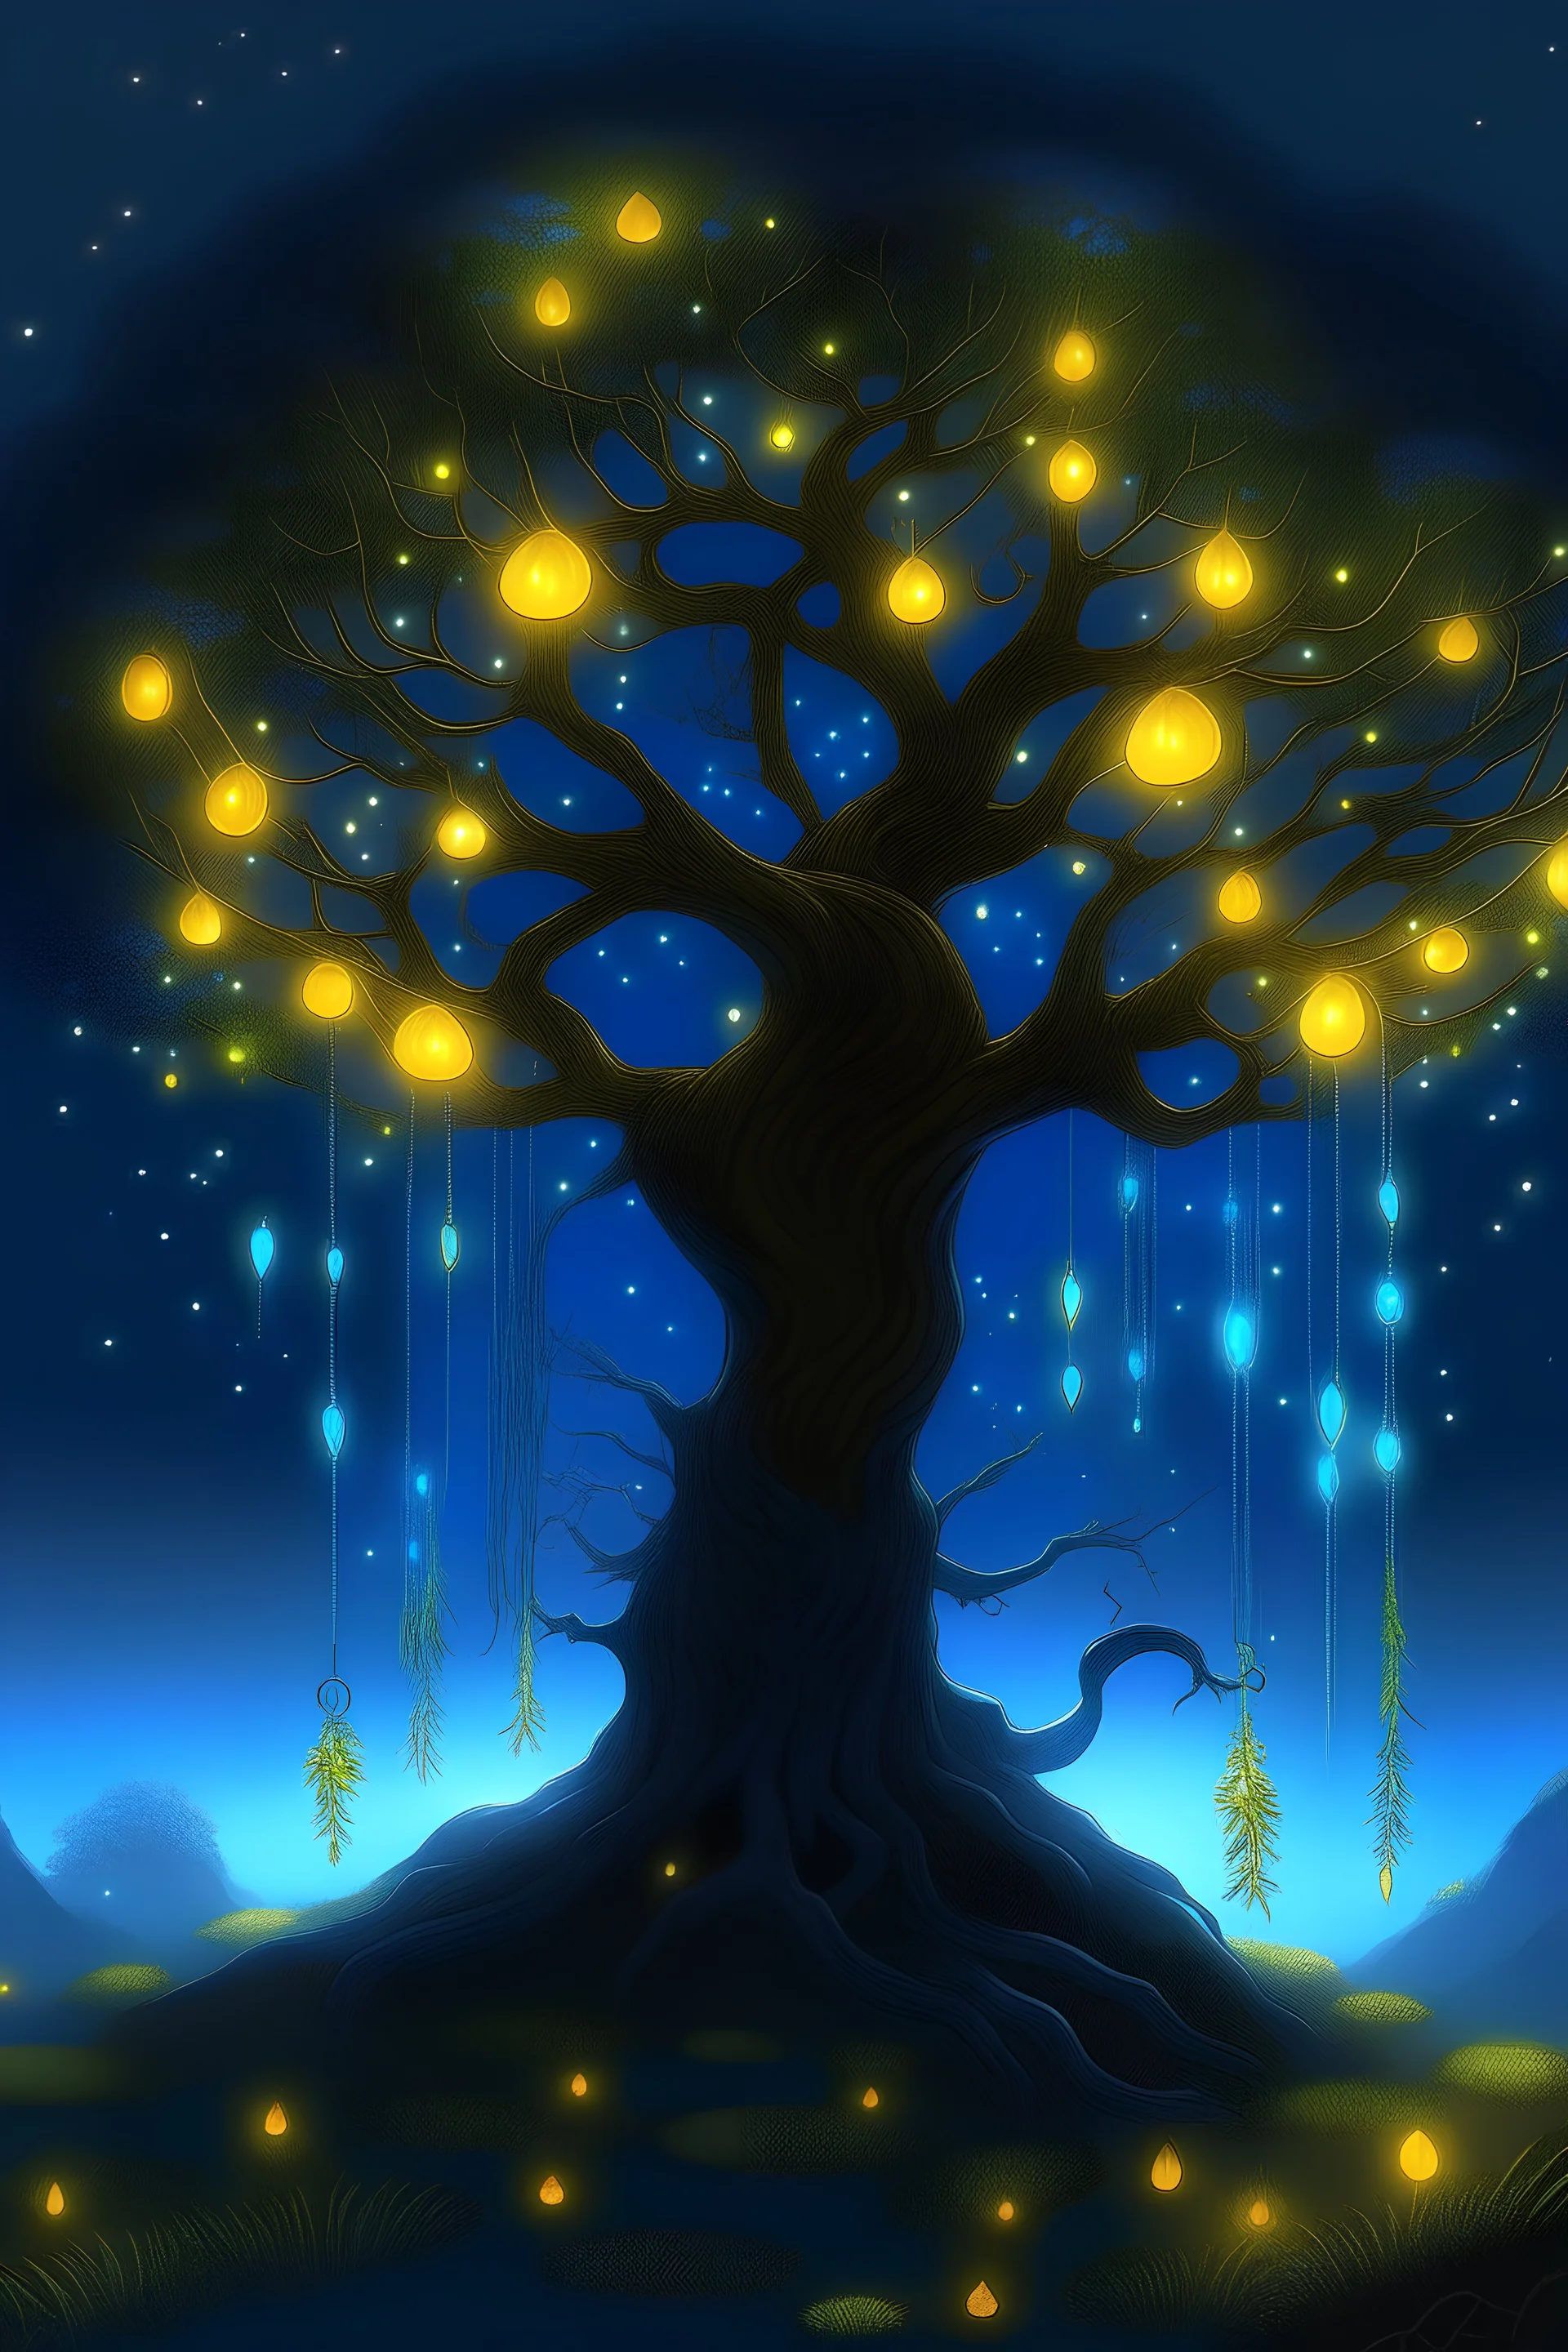 L' arbre des ames avatar, avec des lucioles et un decore thelurique.